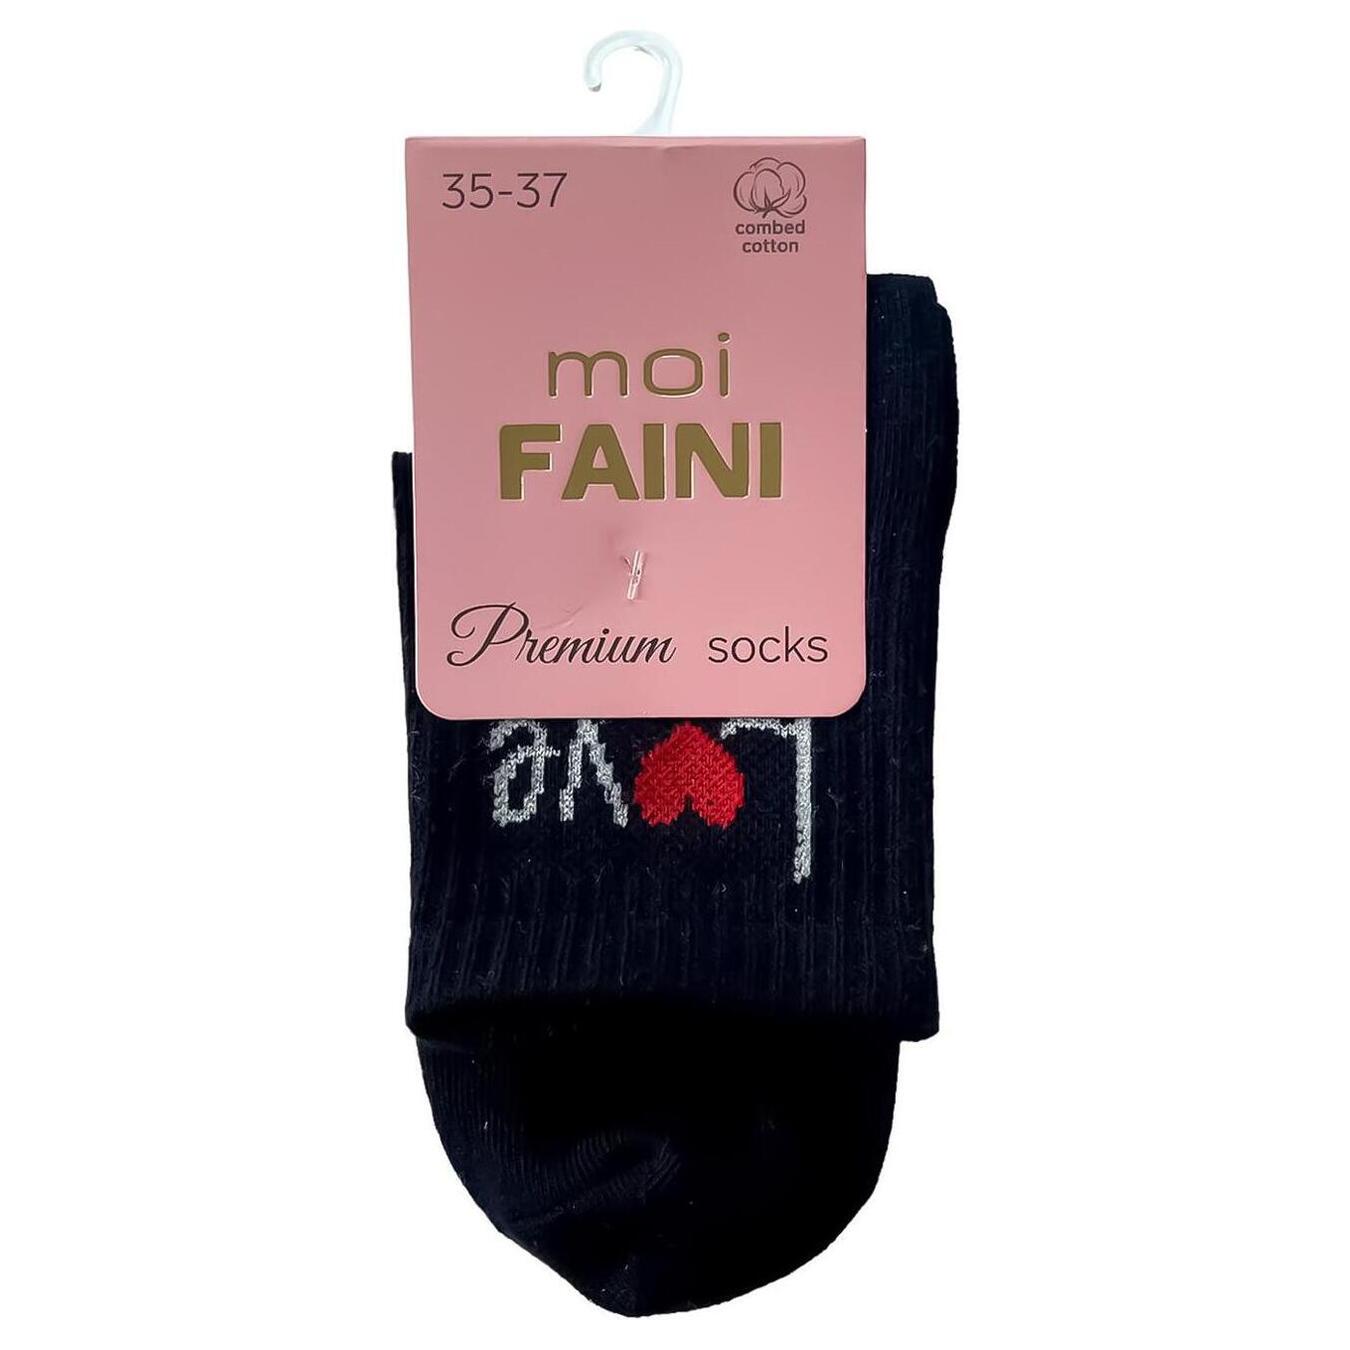 Moi Faini Love women's black socks 35-37 years